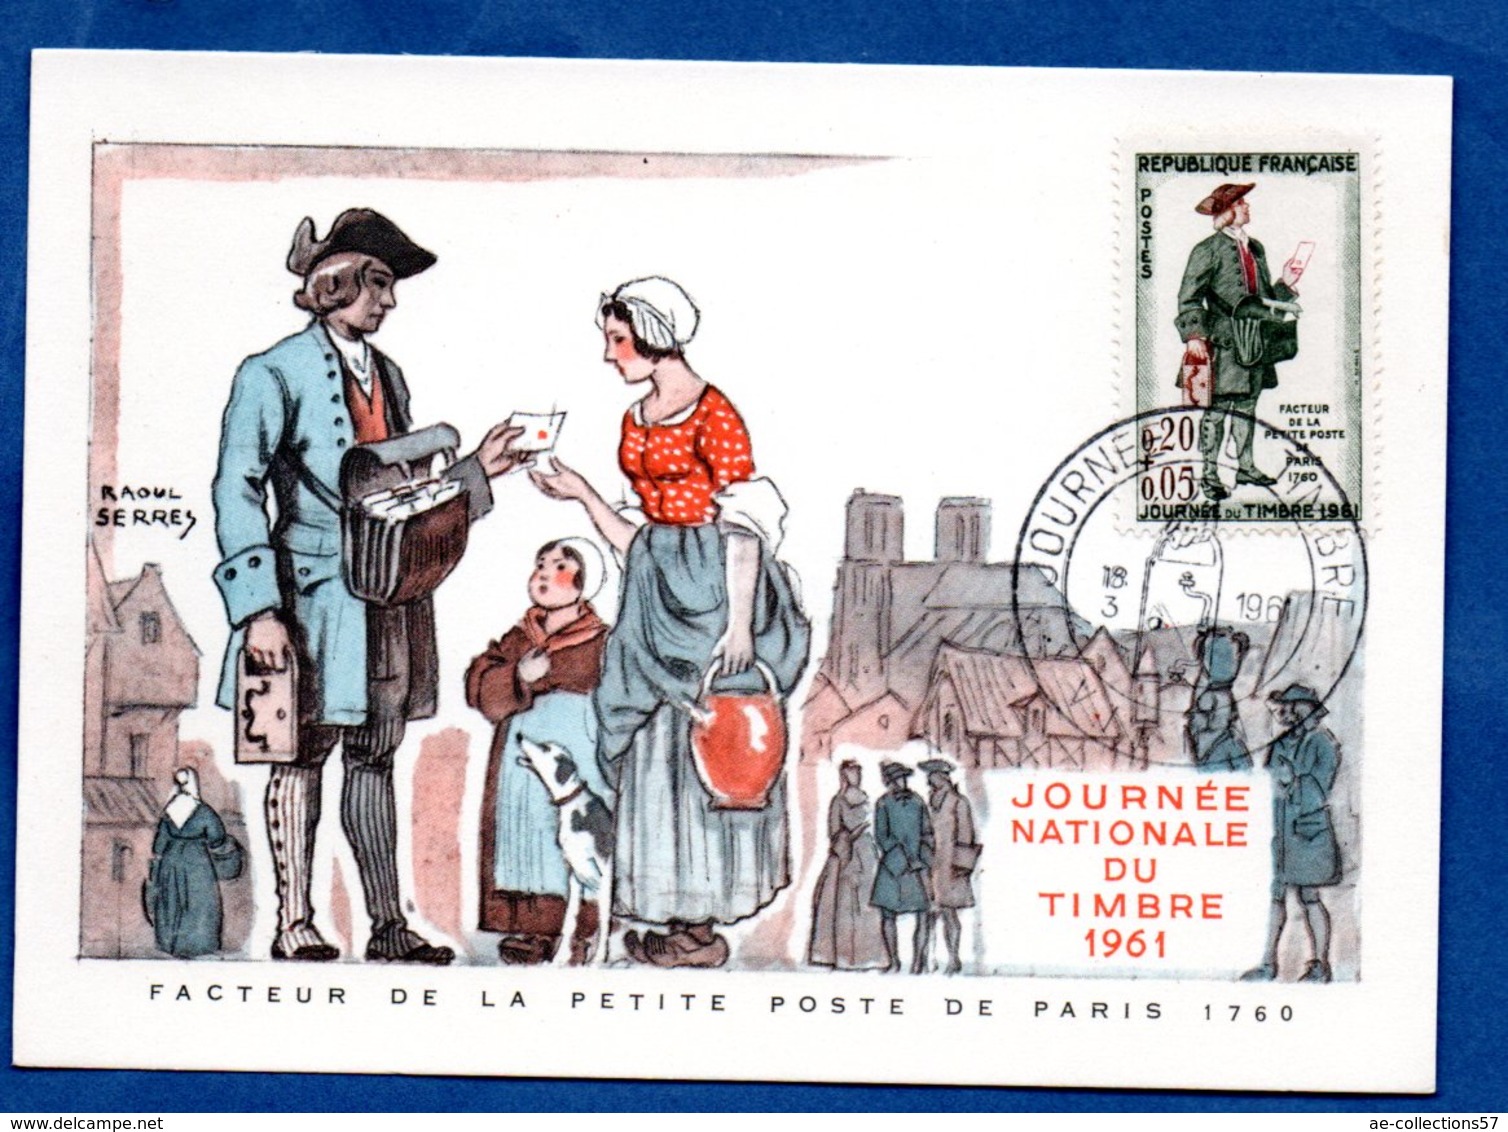 Carte Premier Jour  / Facteur De La Petite Poste De Paris 1760 / Vienne /  18-03-1961 - 1960-1969